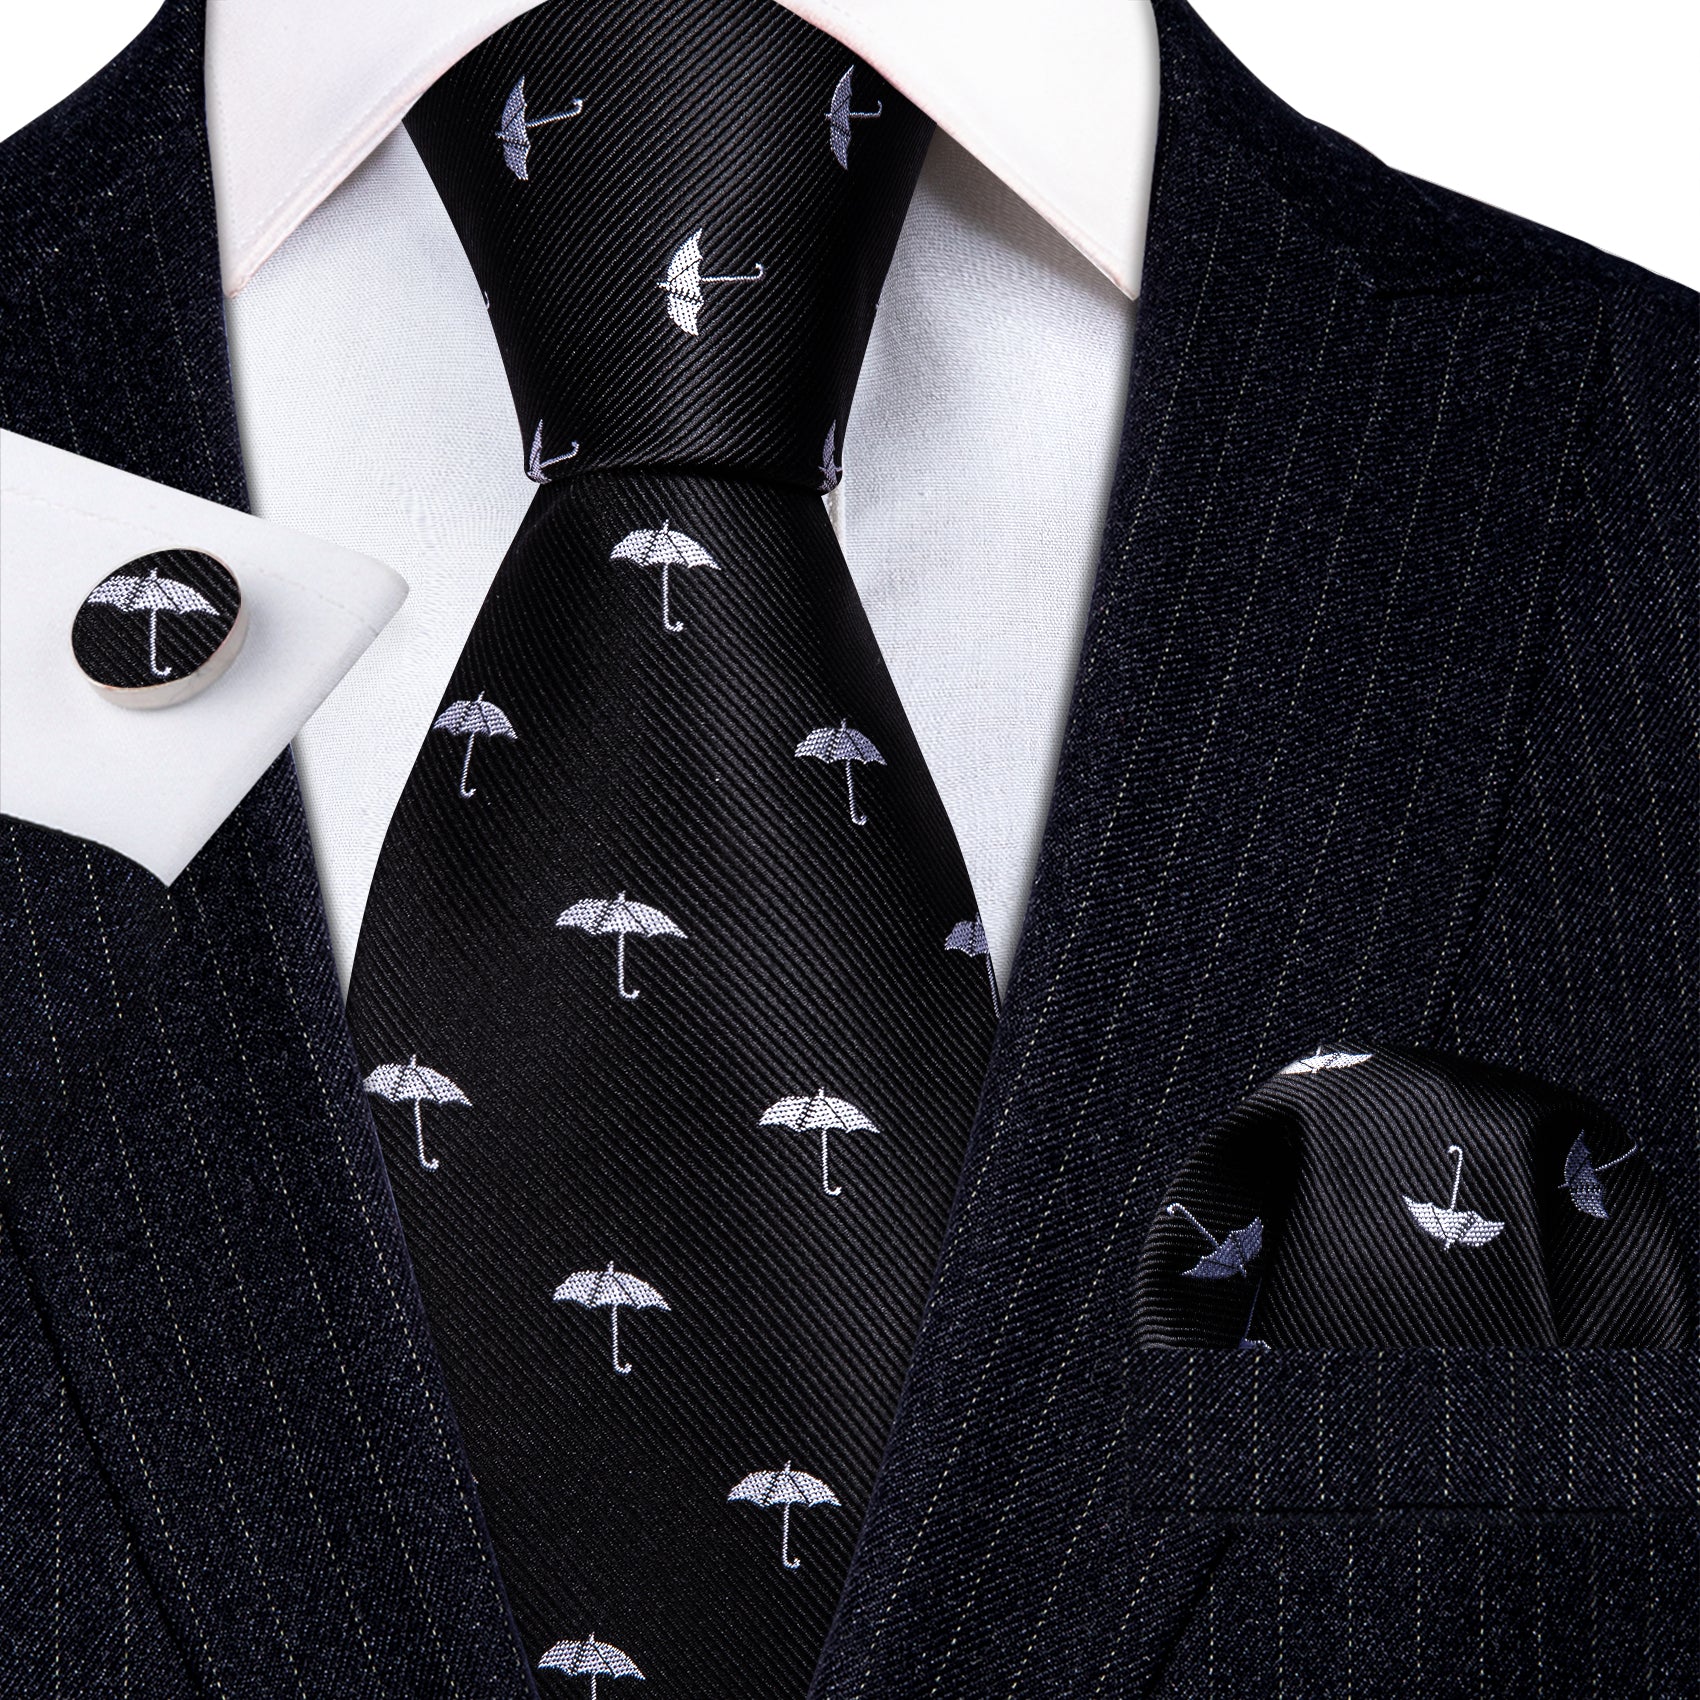 Black White Umbrella Silk Tie Handkerchief Cufflinks Set